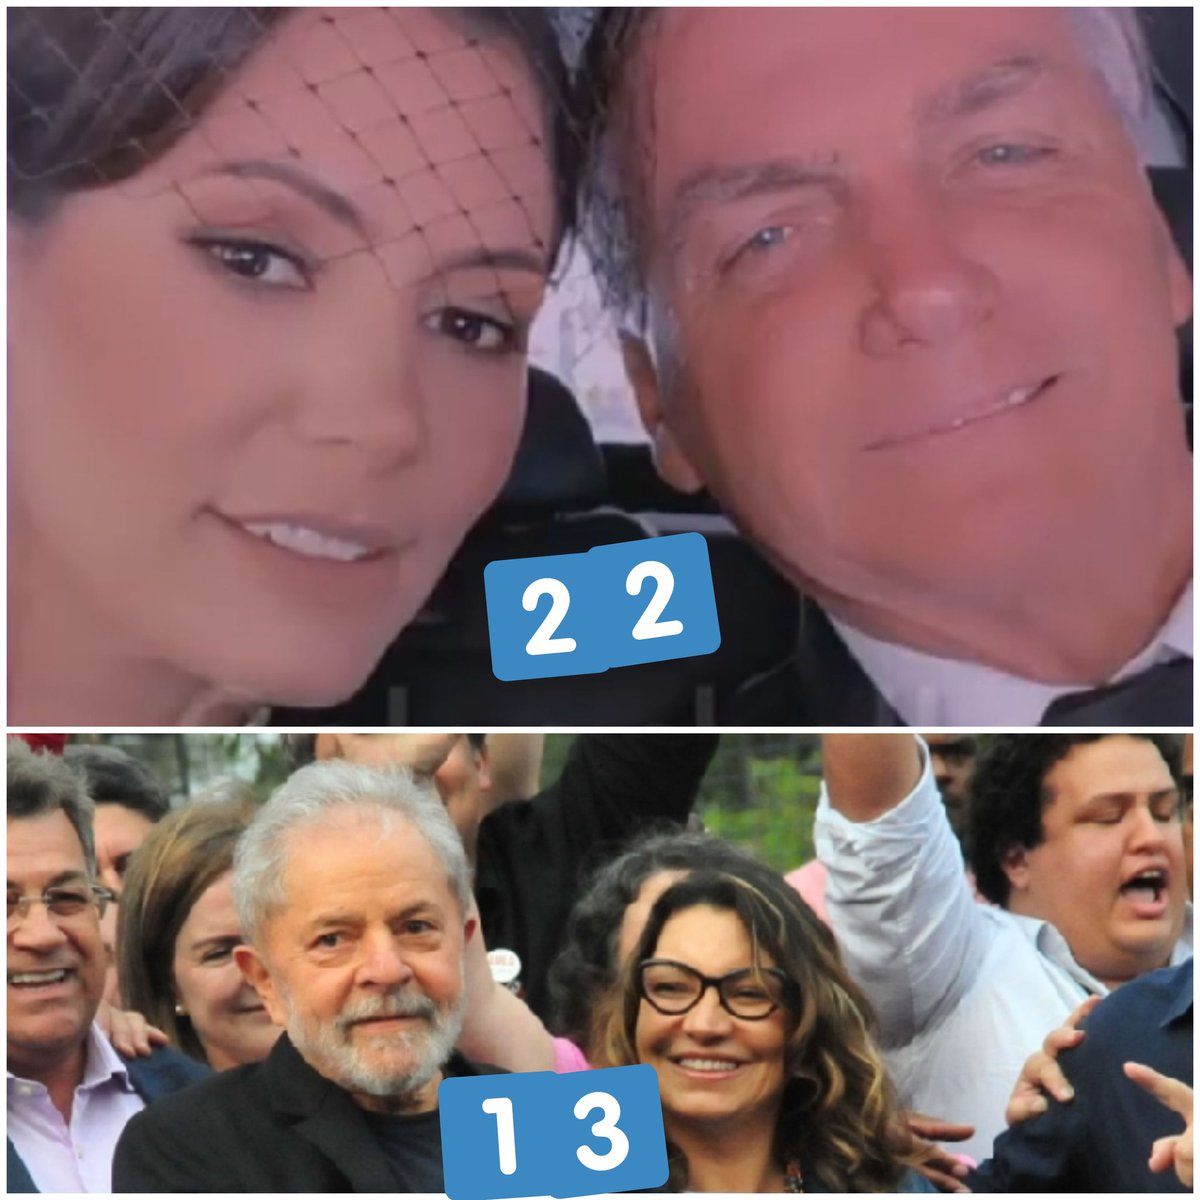 Qual é o seu casal presidencial!? 2️⃣2️⃣ Bolsochelle 1️⃣3️⃣ Lujadrão Responde aí no comentário.